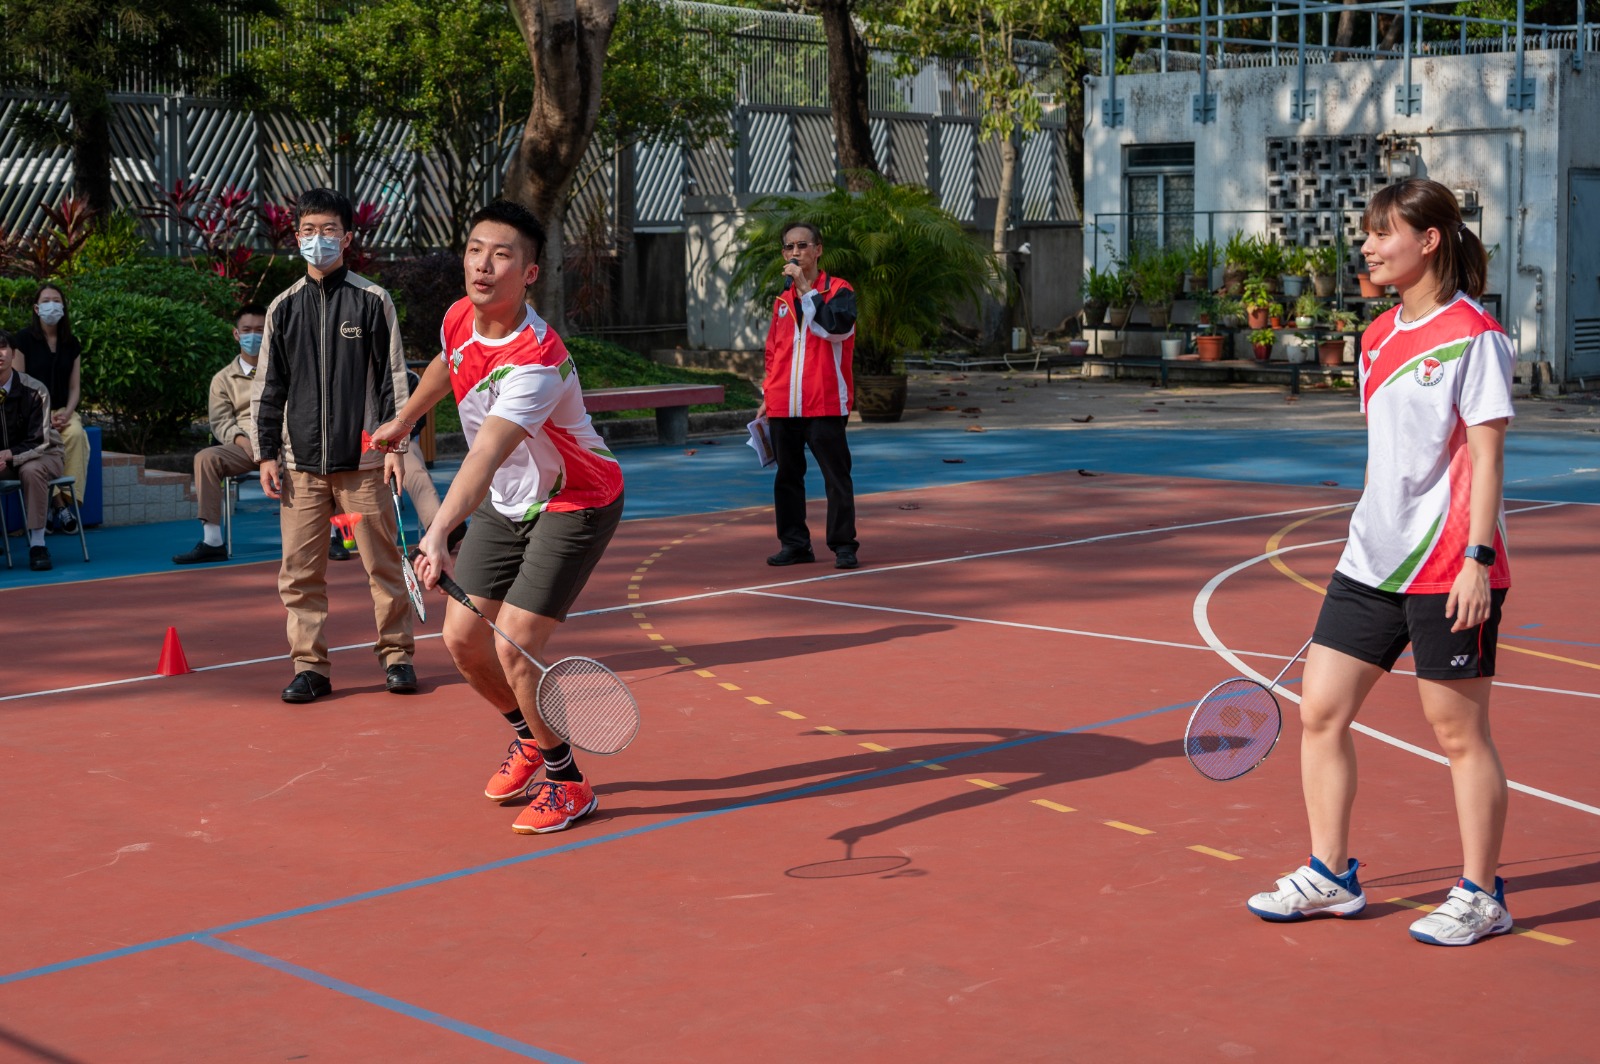 羅卓謙(左)、梁悅儀(右)示範戶外羽毛球玩法